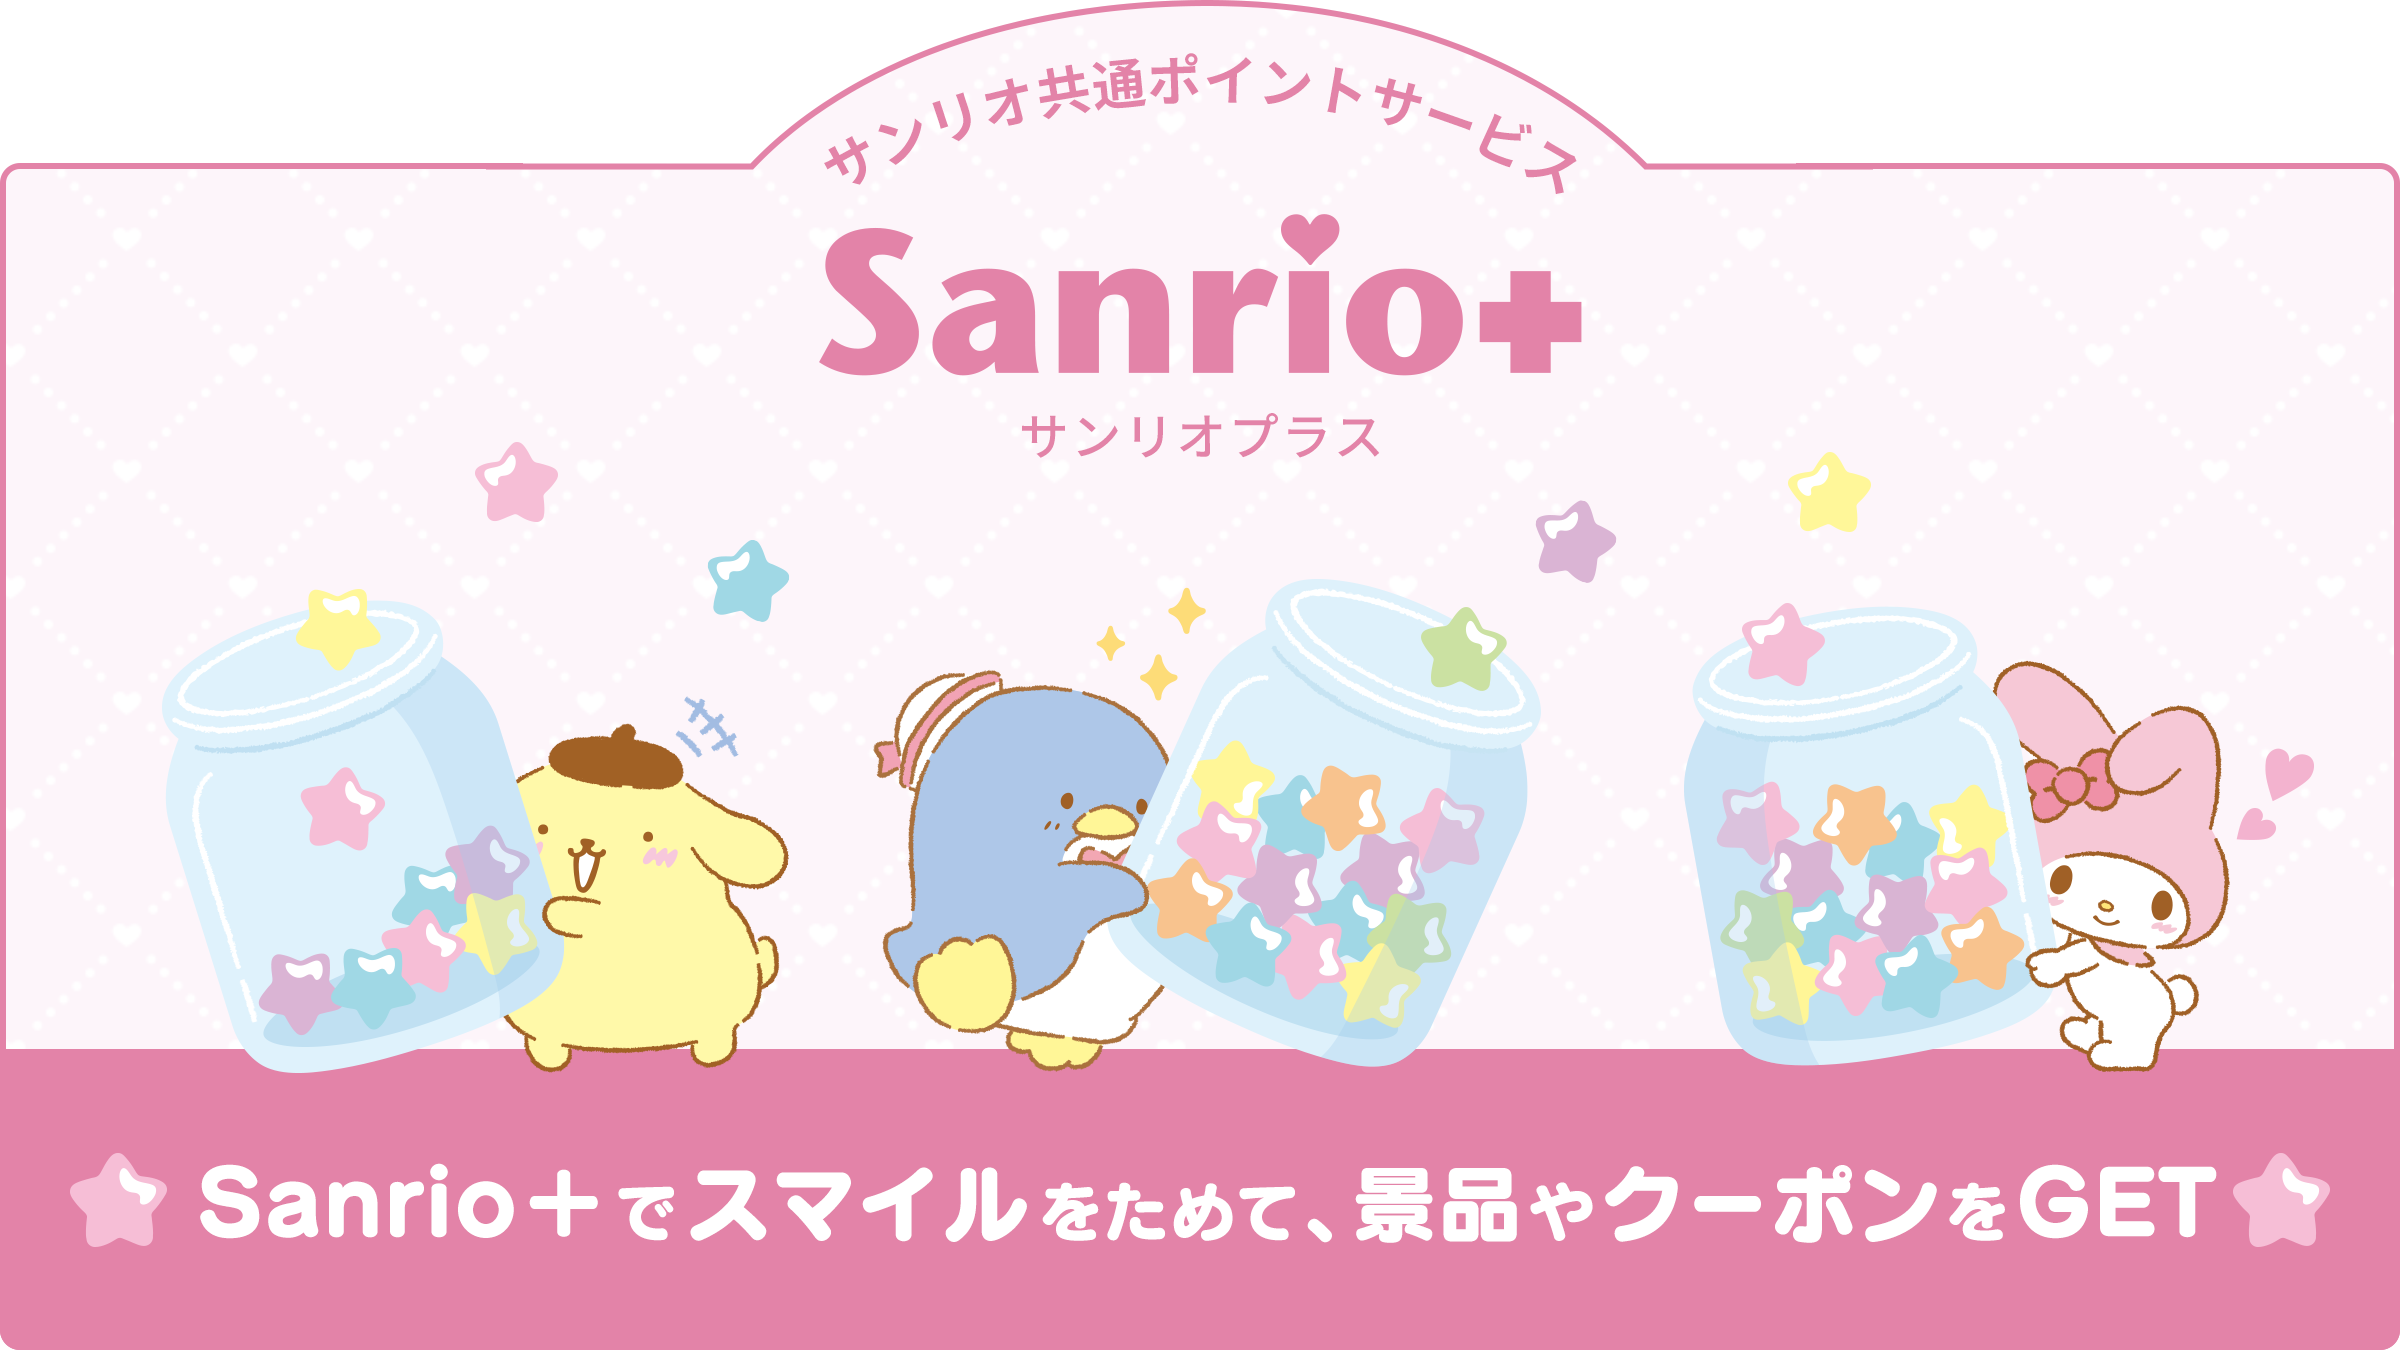 Sanrio Plus